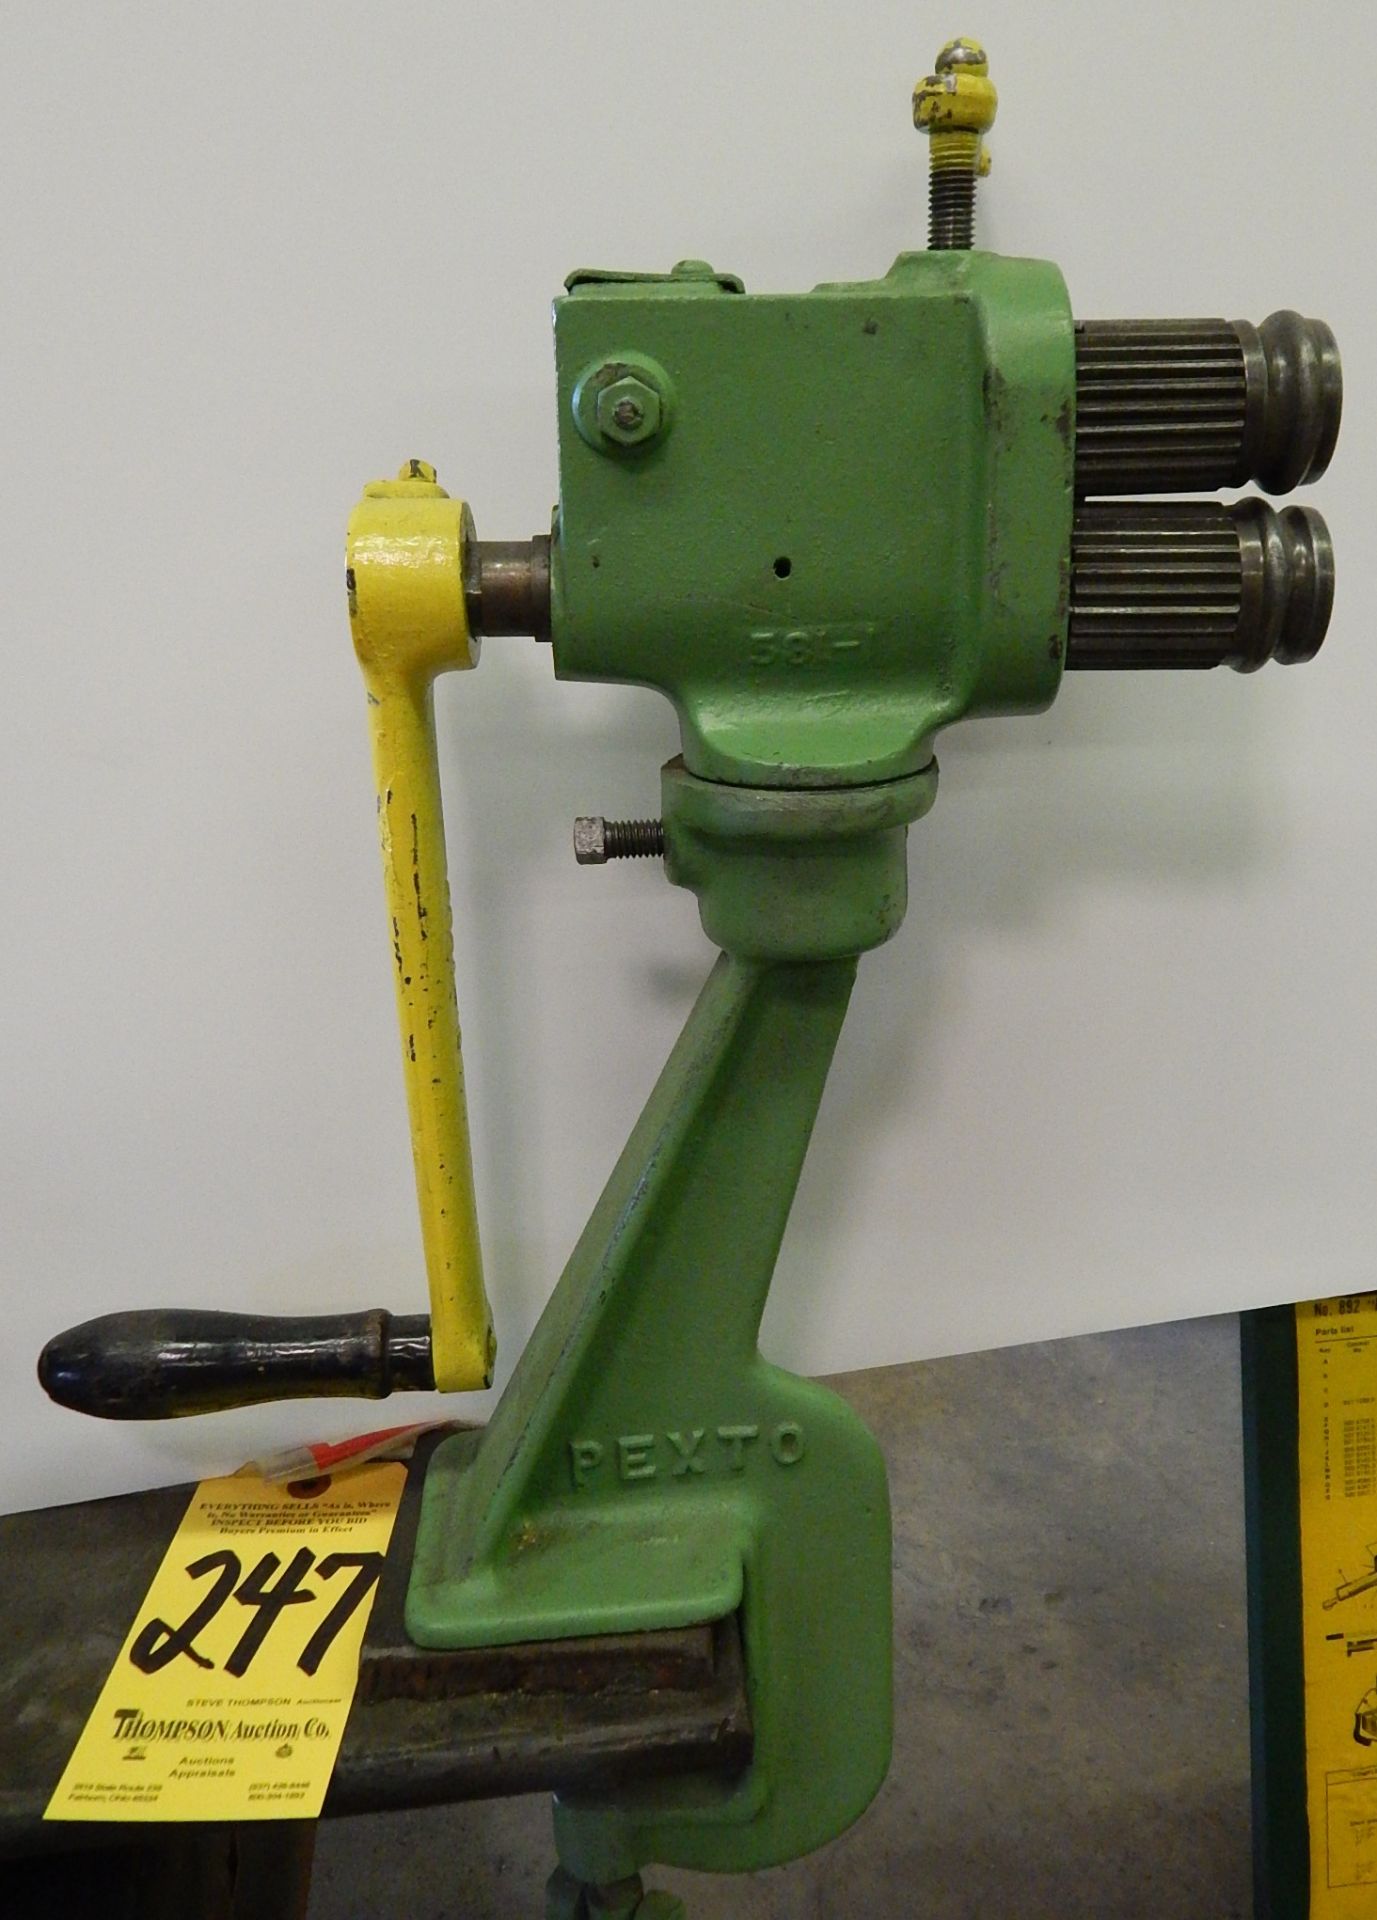 Pexto 0581 Hand-Operated Rotary Machine